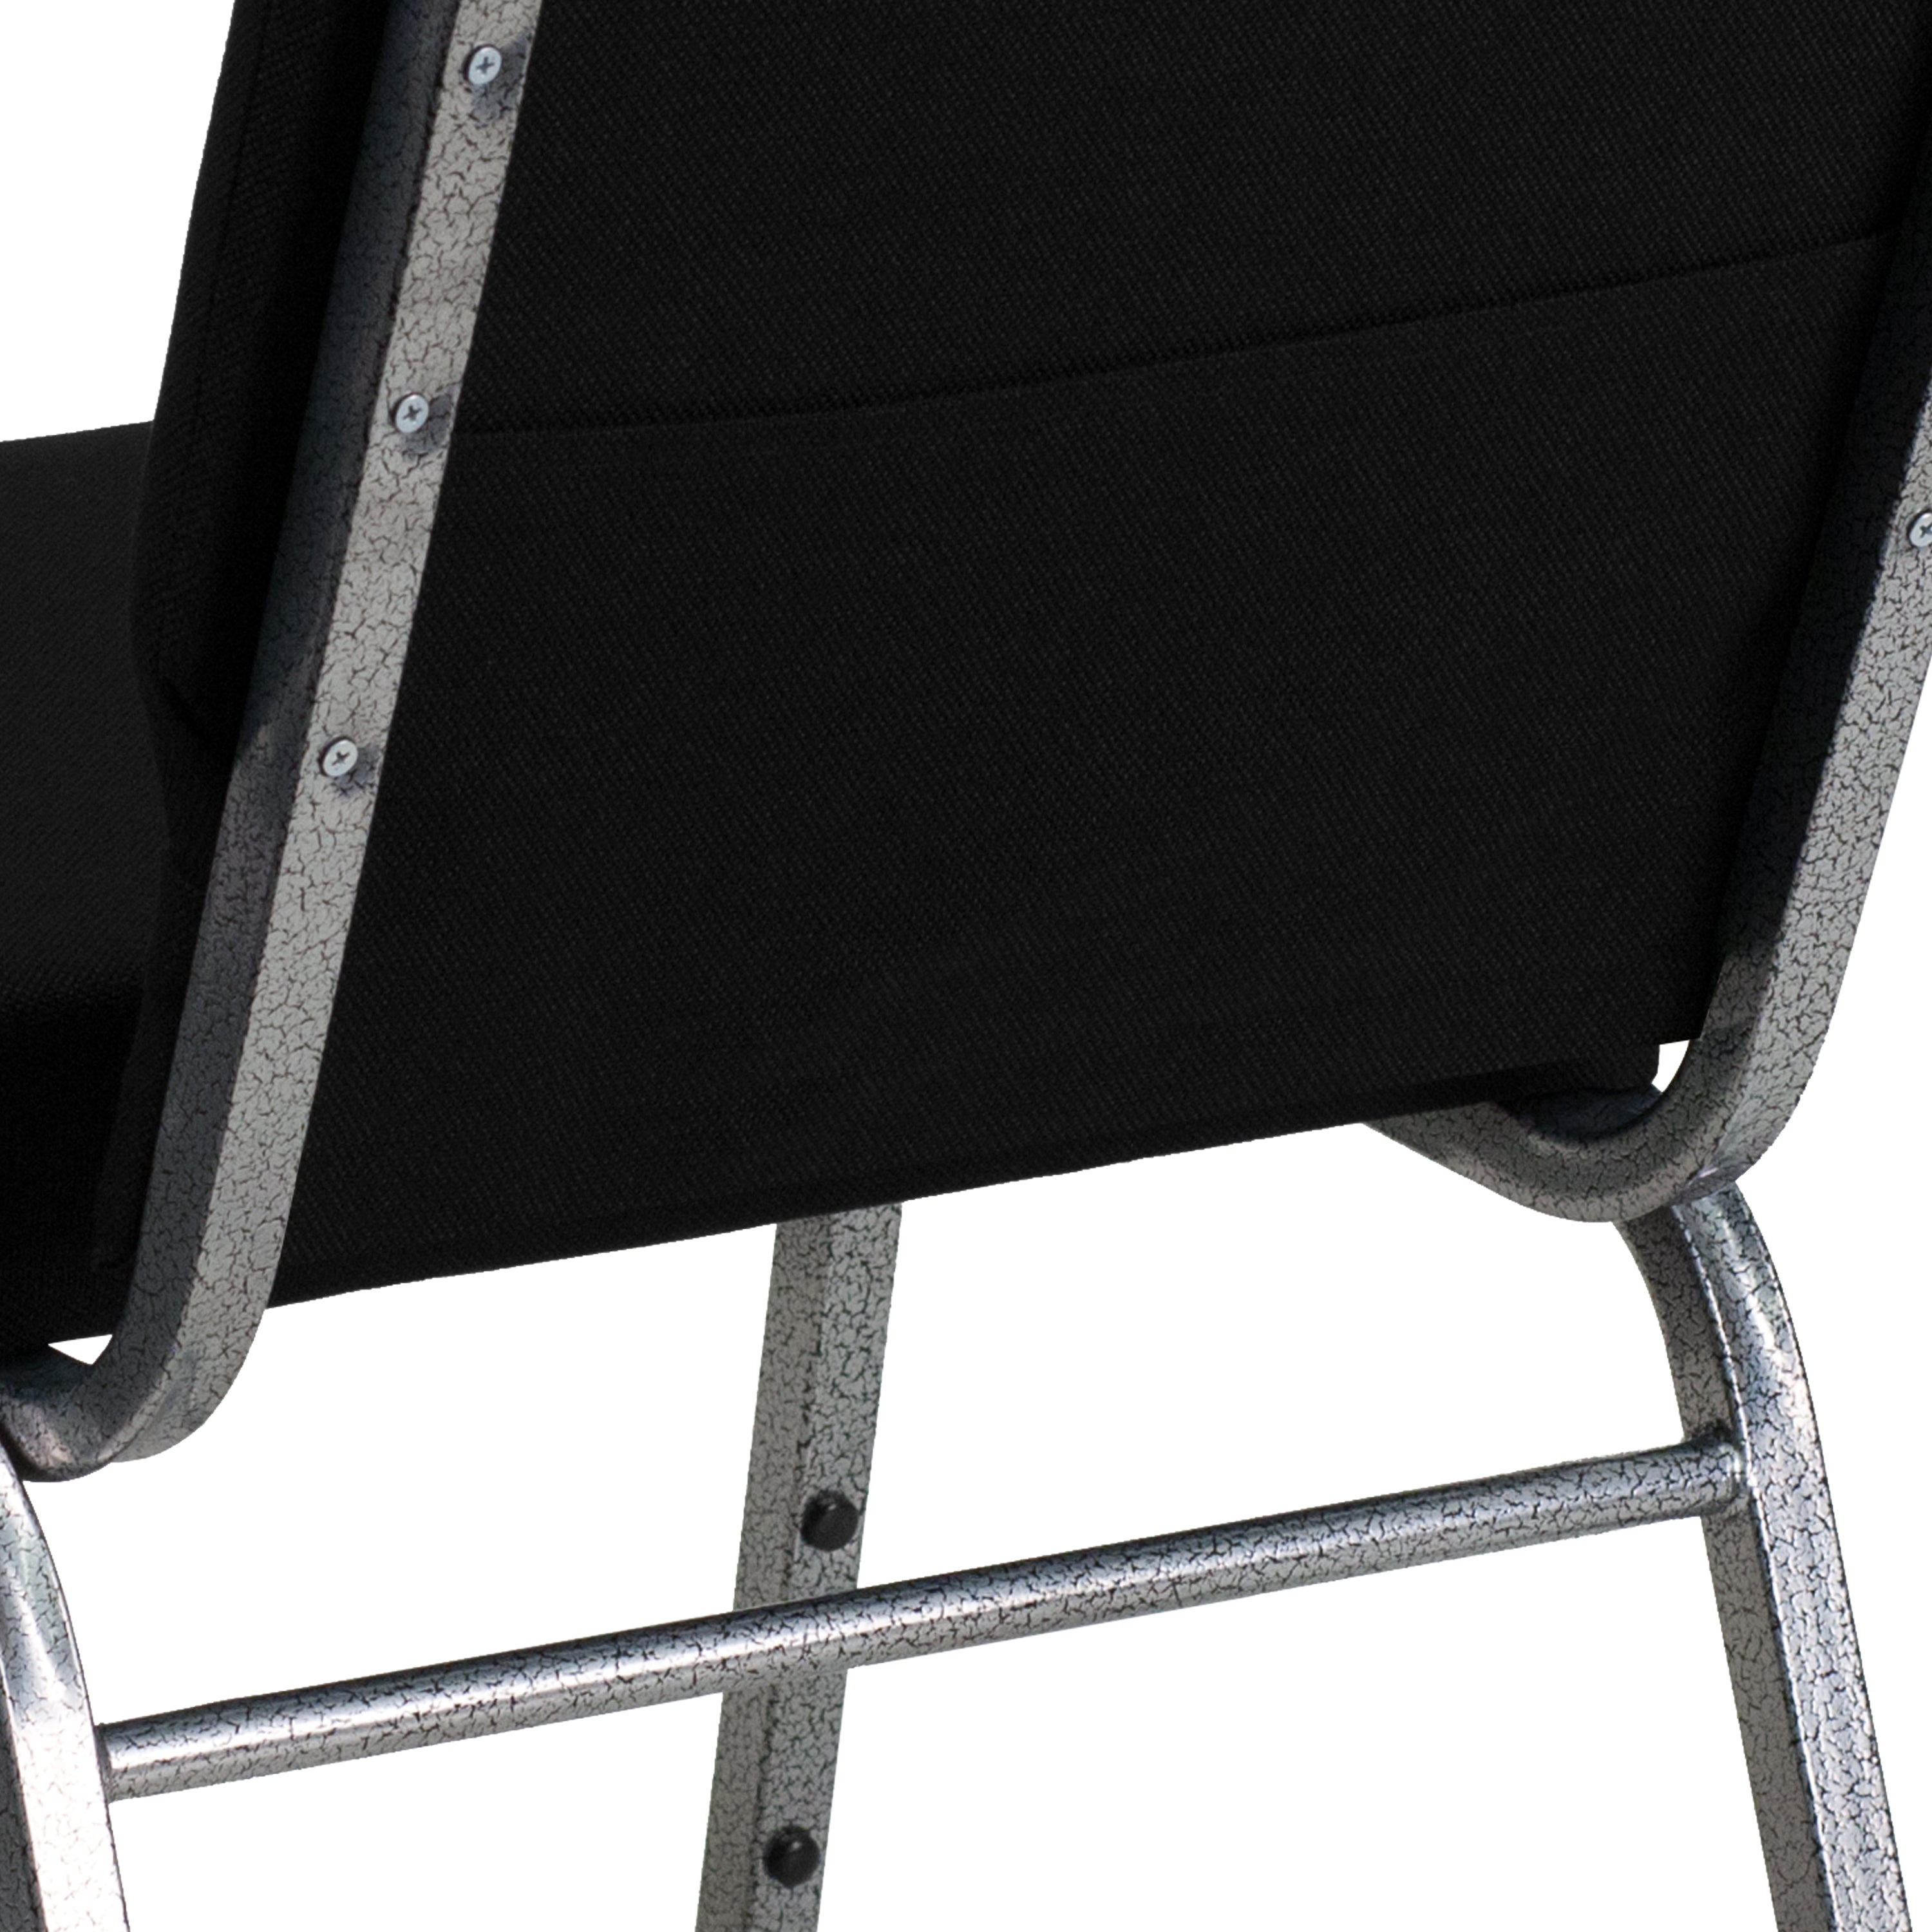 HERCULES Series 21''W Stacking Church Chair-Church Chair-Flash Furniture-Wall2Wall Furnishings